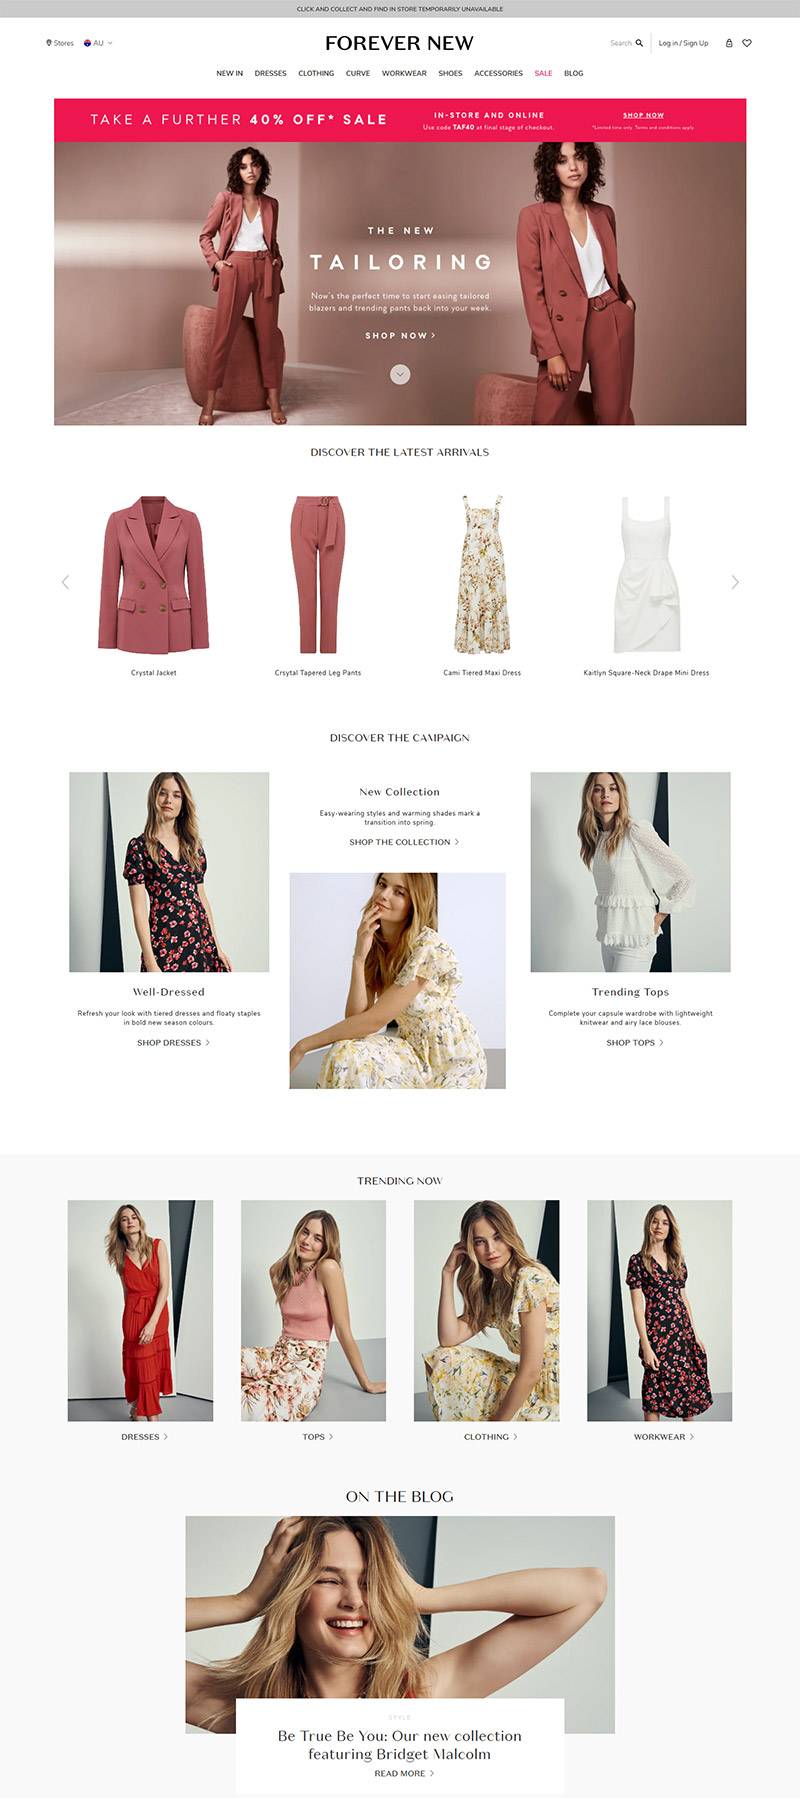 Ever New 澳大利亚女性时装配饰品牌网站